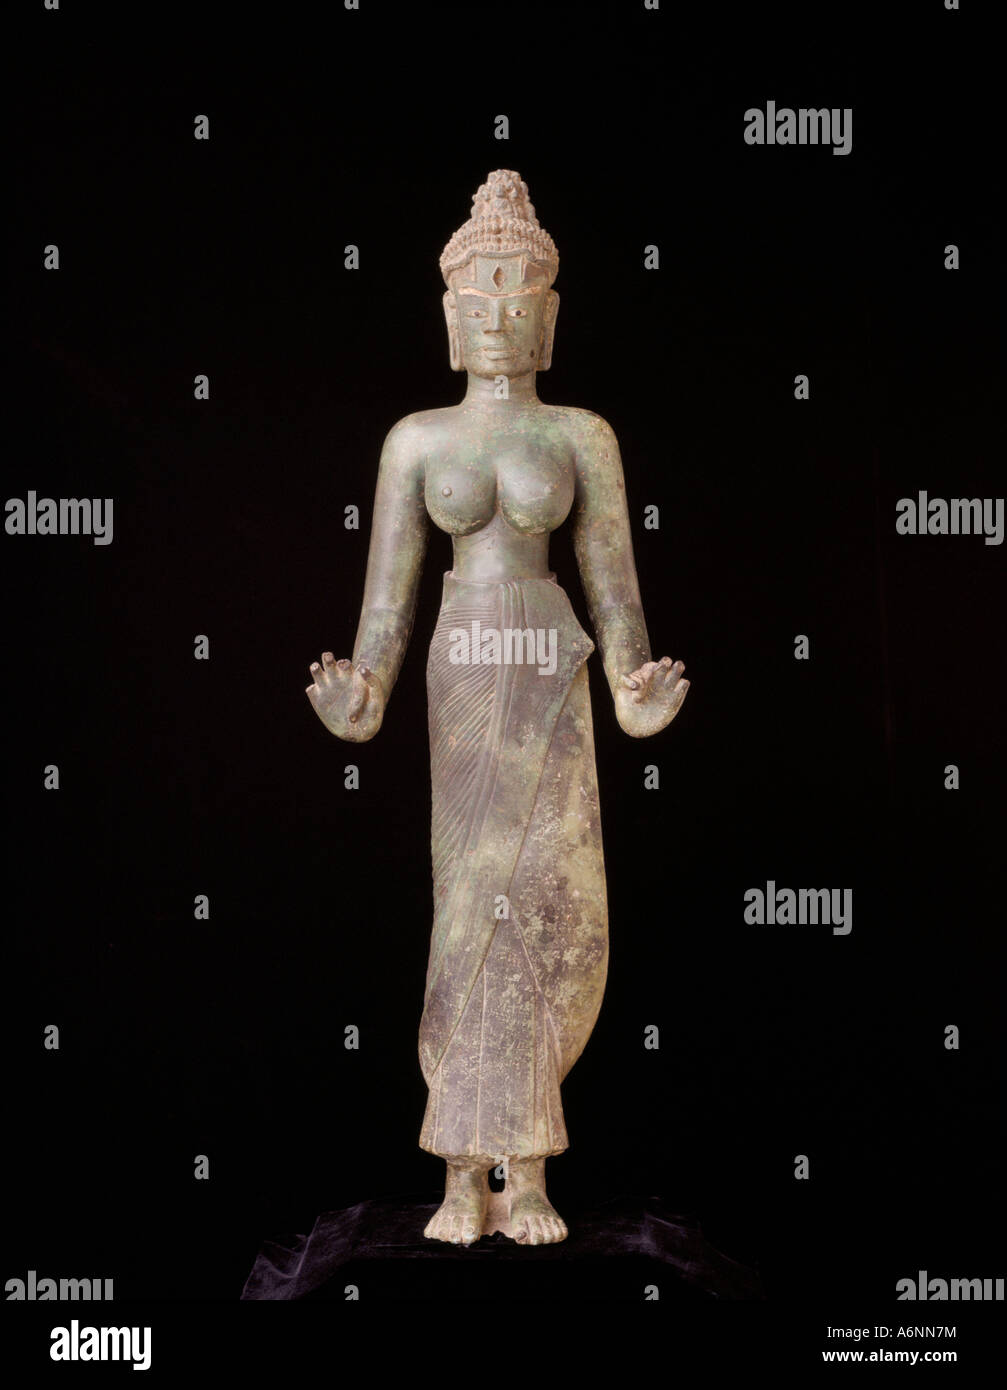 Bronzestatue von Tara Cham Museum Da Nang Vietnam Indochina Südost-Asien Asien Stockfoto